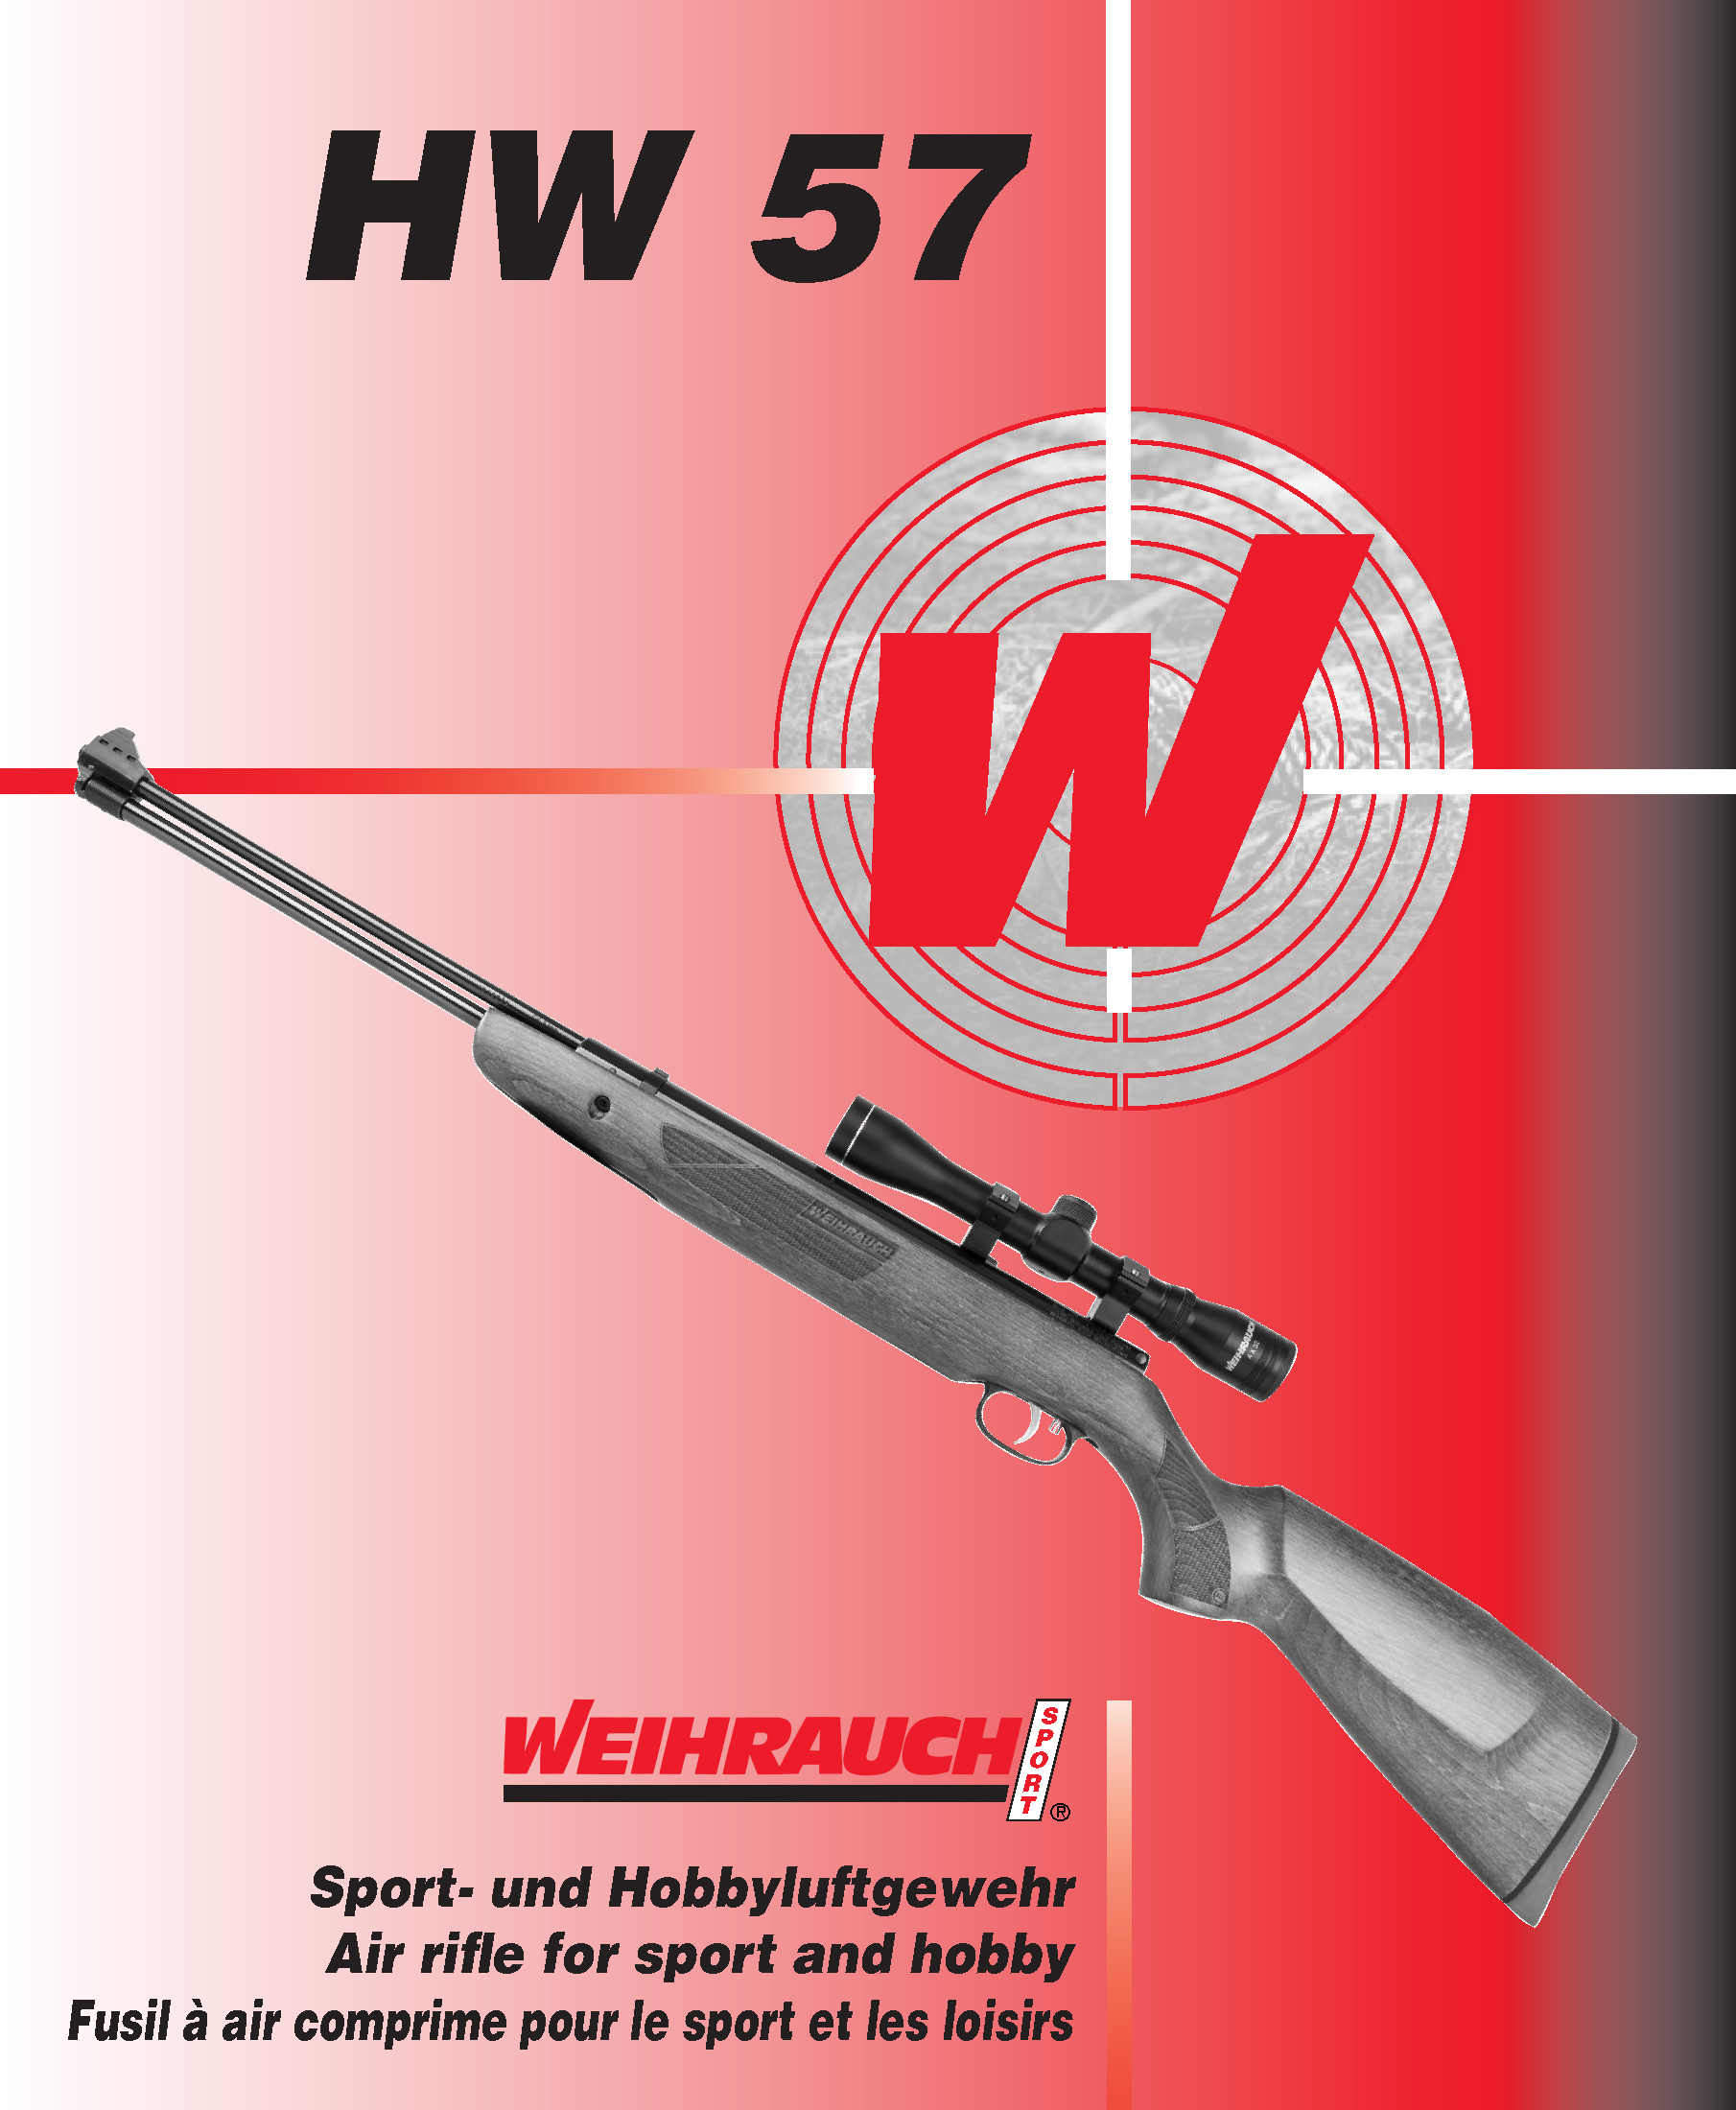 Manual WW Luftgewehr HW 57 05 2015 1